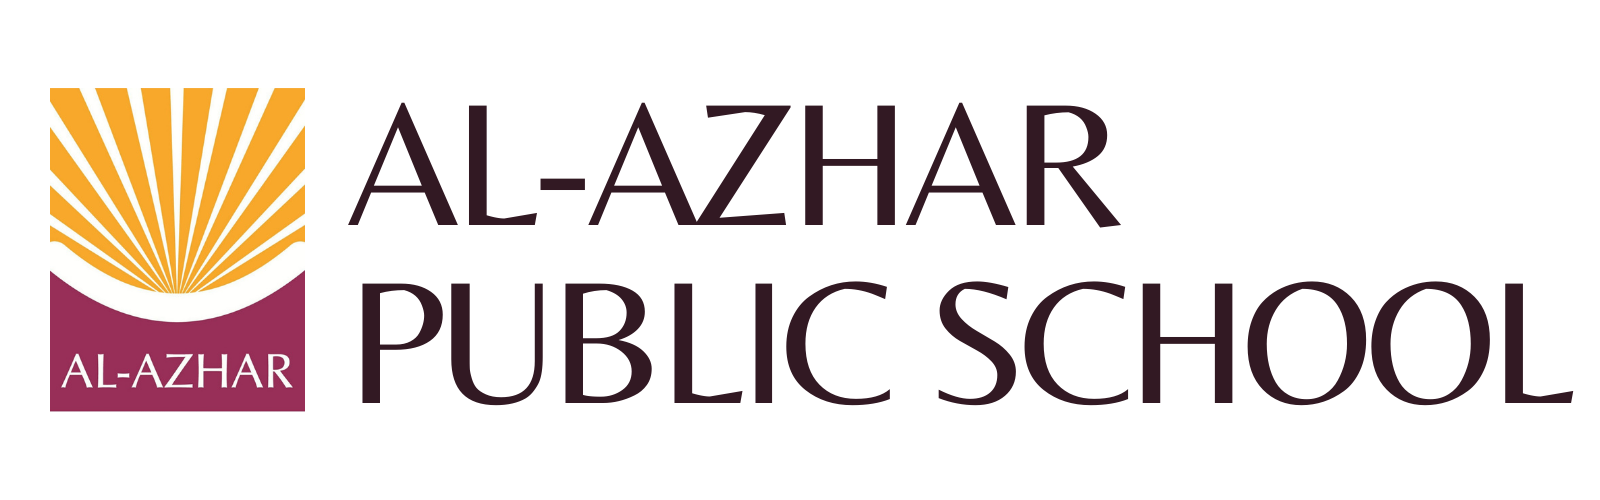 Al-Azhar Public School